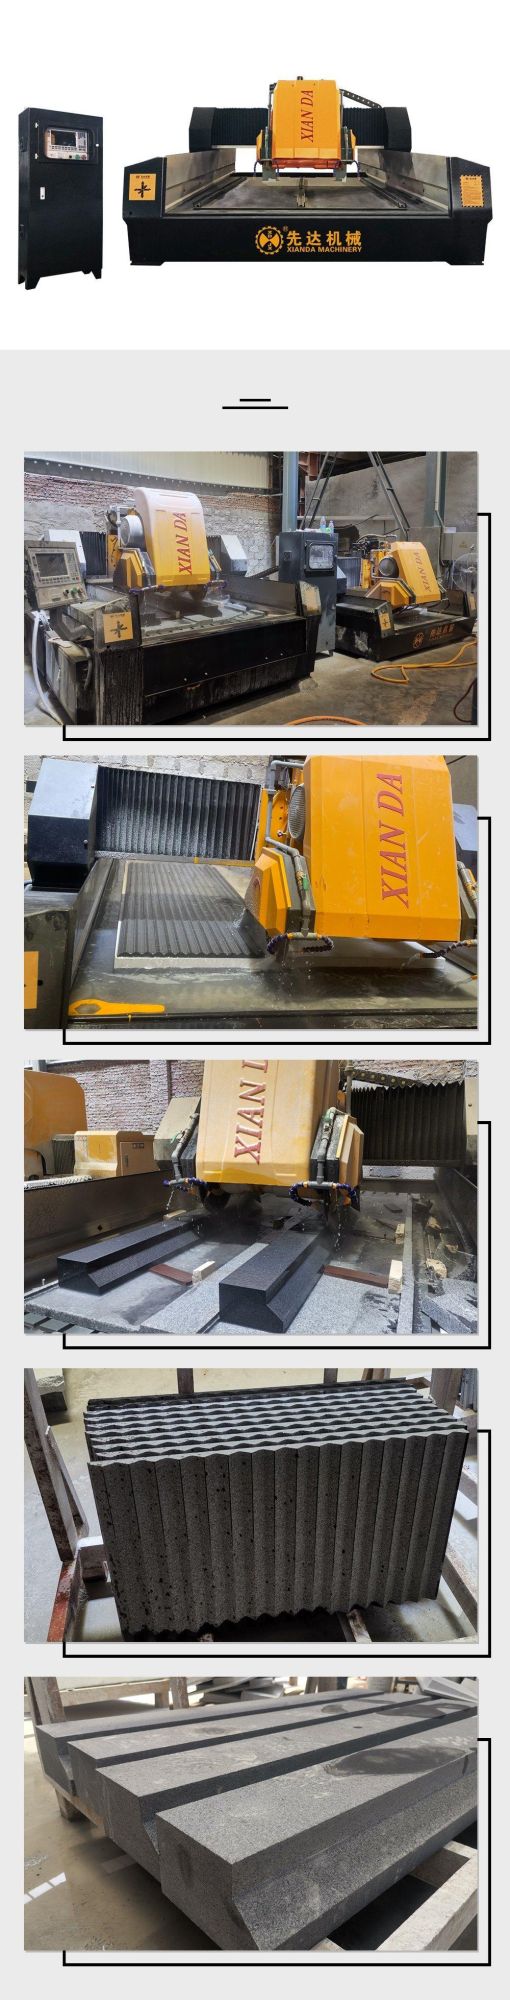 Xianda Stone Cutting Machine 3 Axis Linear Cutting Machine Lcmm-1300/1800